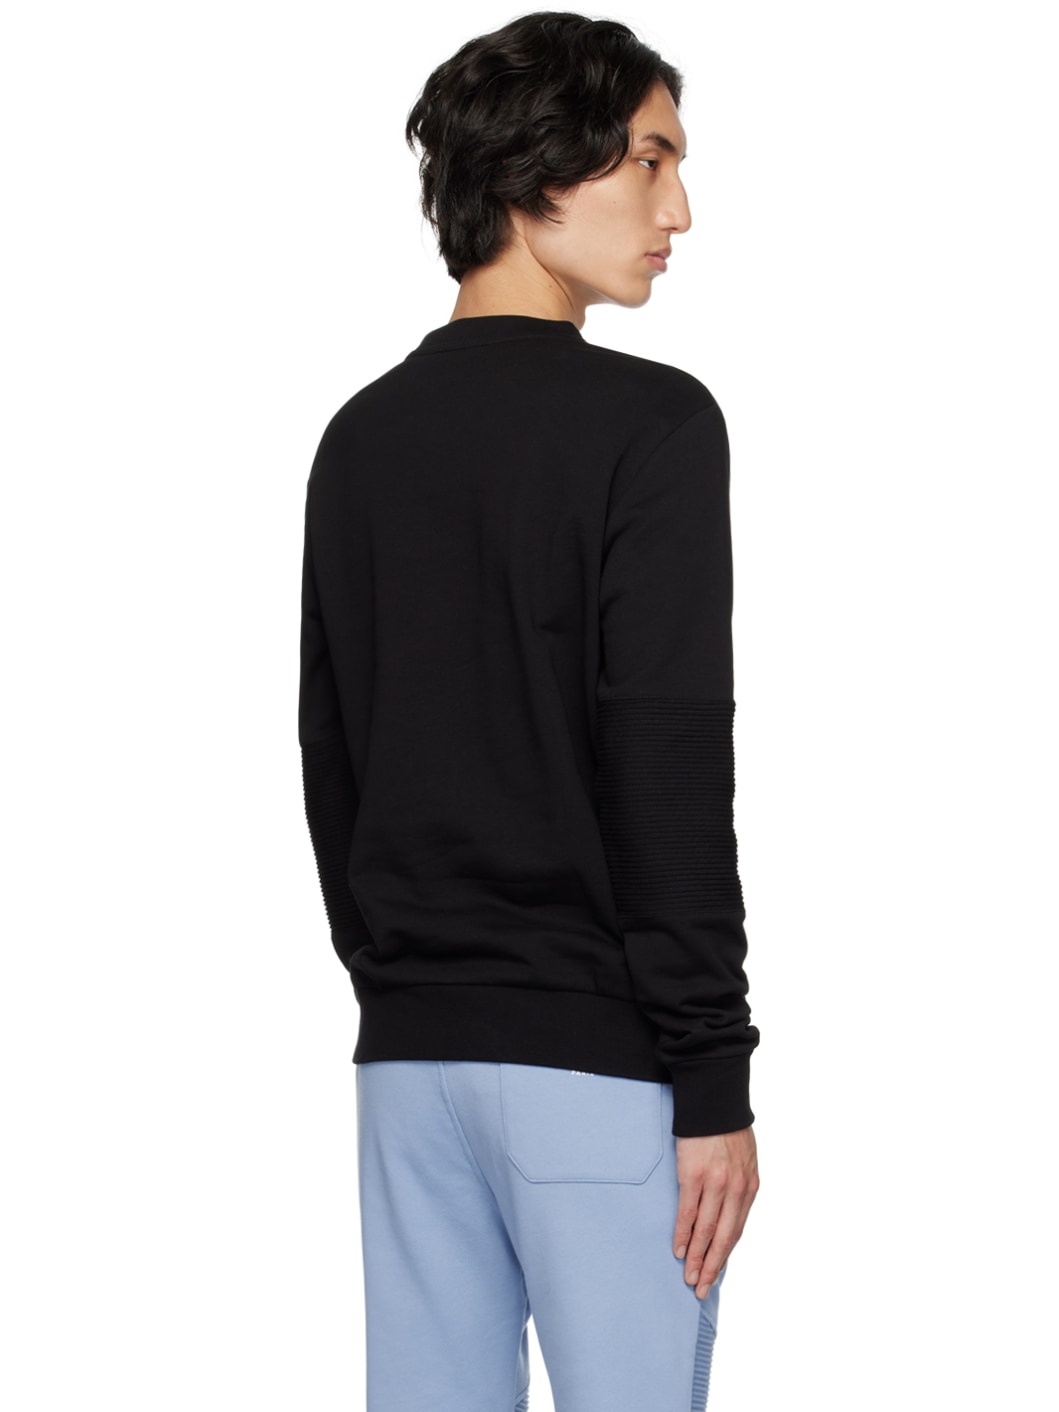 Black Reflective Sweatshirt - 3